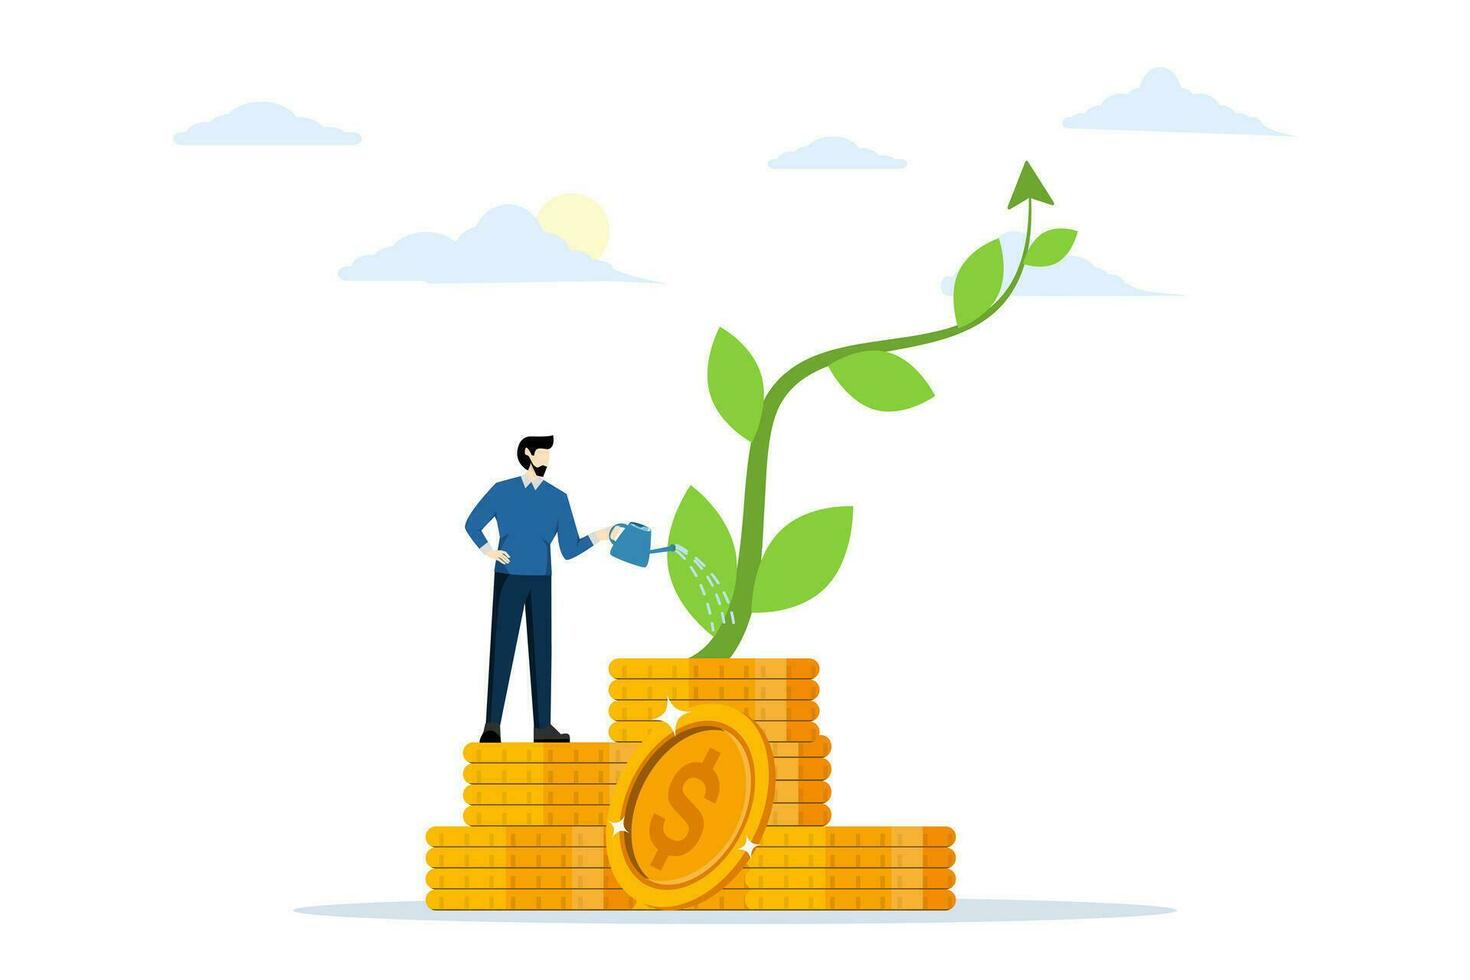 Investition Wachstum oder Geschäft Wachstum, ein Geschäftsmann Bewässerung ein klein Pflanze geformt mögen ein Wachstum Diagramm. machen profitieren im Lager Markt oder Einkommen Wachstum Konzept. eben Vektor Illustration.